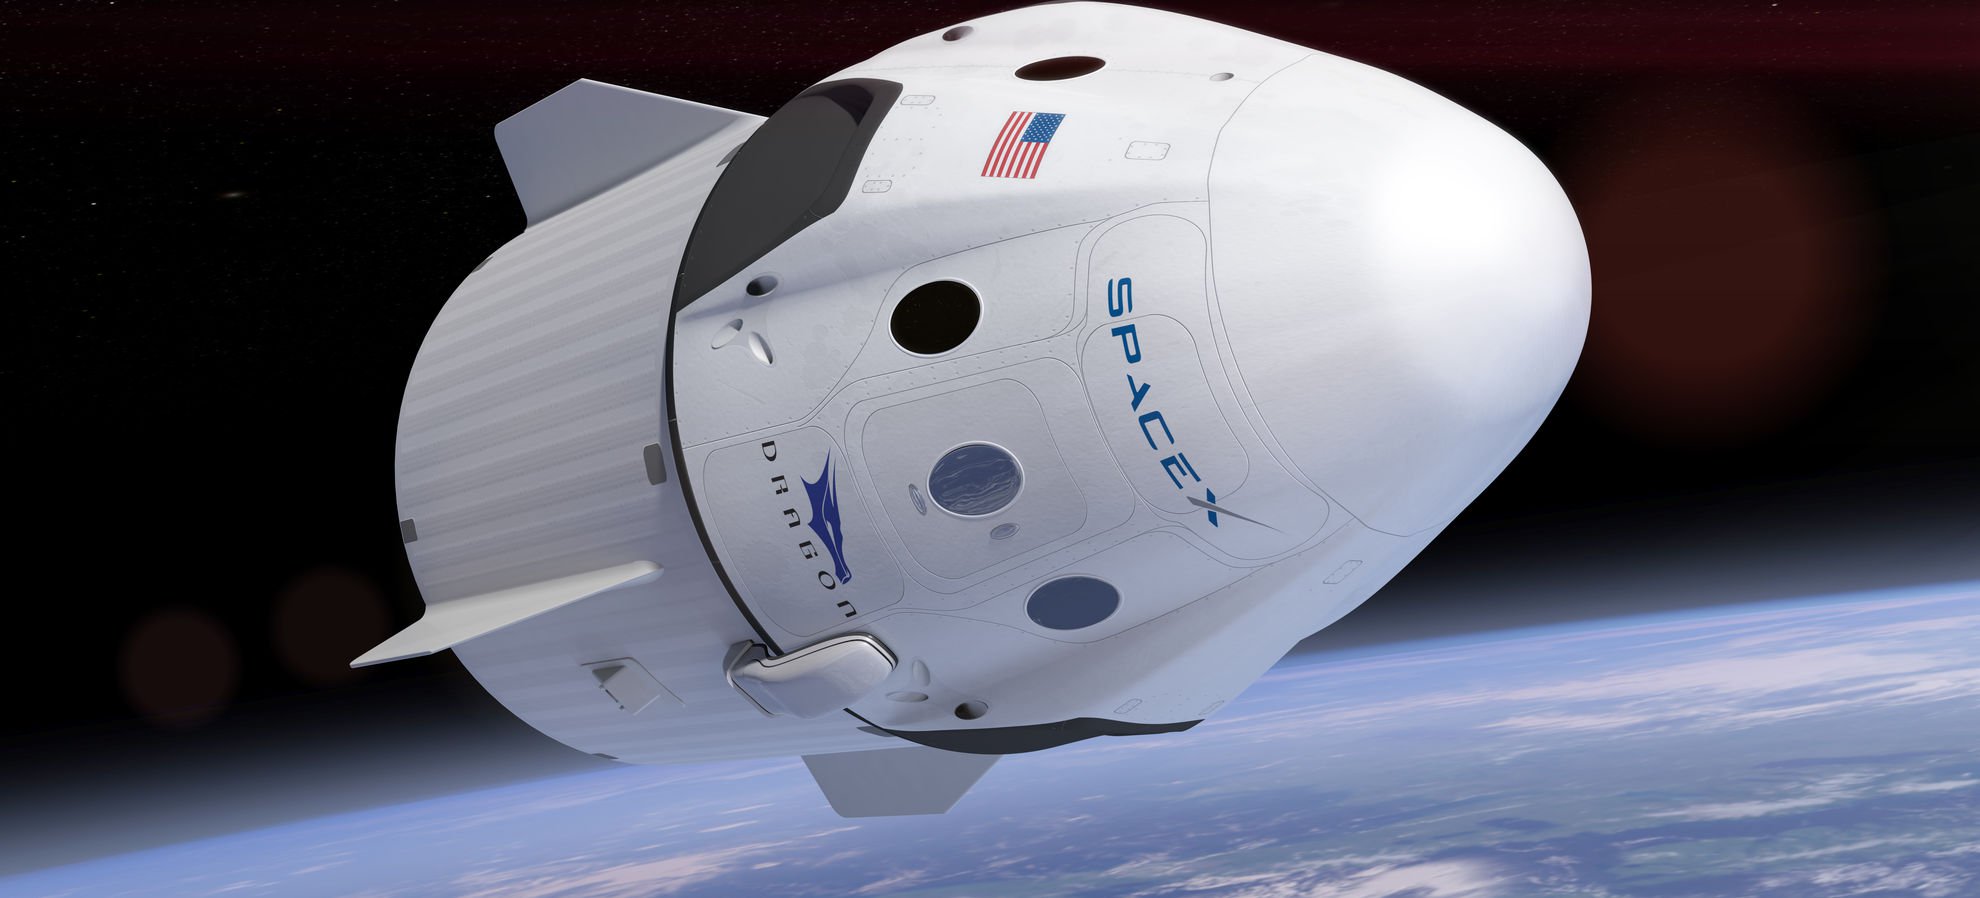 Boeing podría financiar la campaña en contra de SpaceX